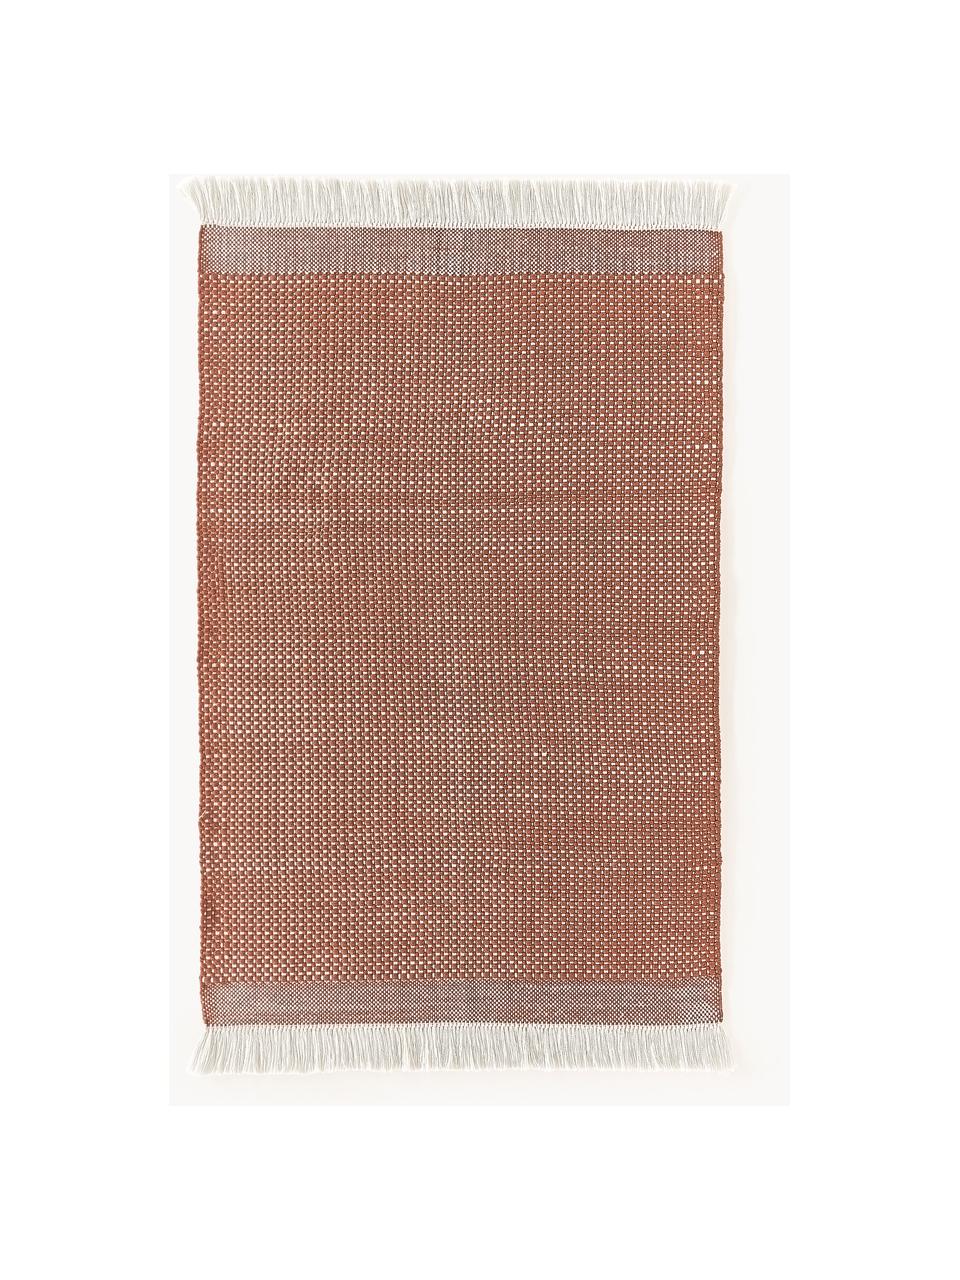 Tapis tissé à plat avec franges Ryder, 100 % polyester, certifié GRS, Terracotta, blanc, larg. 120 x long. 180 cm (taille S)